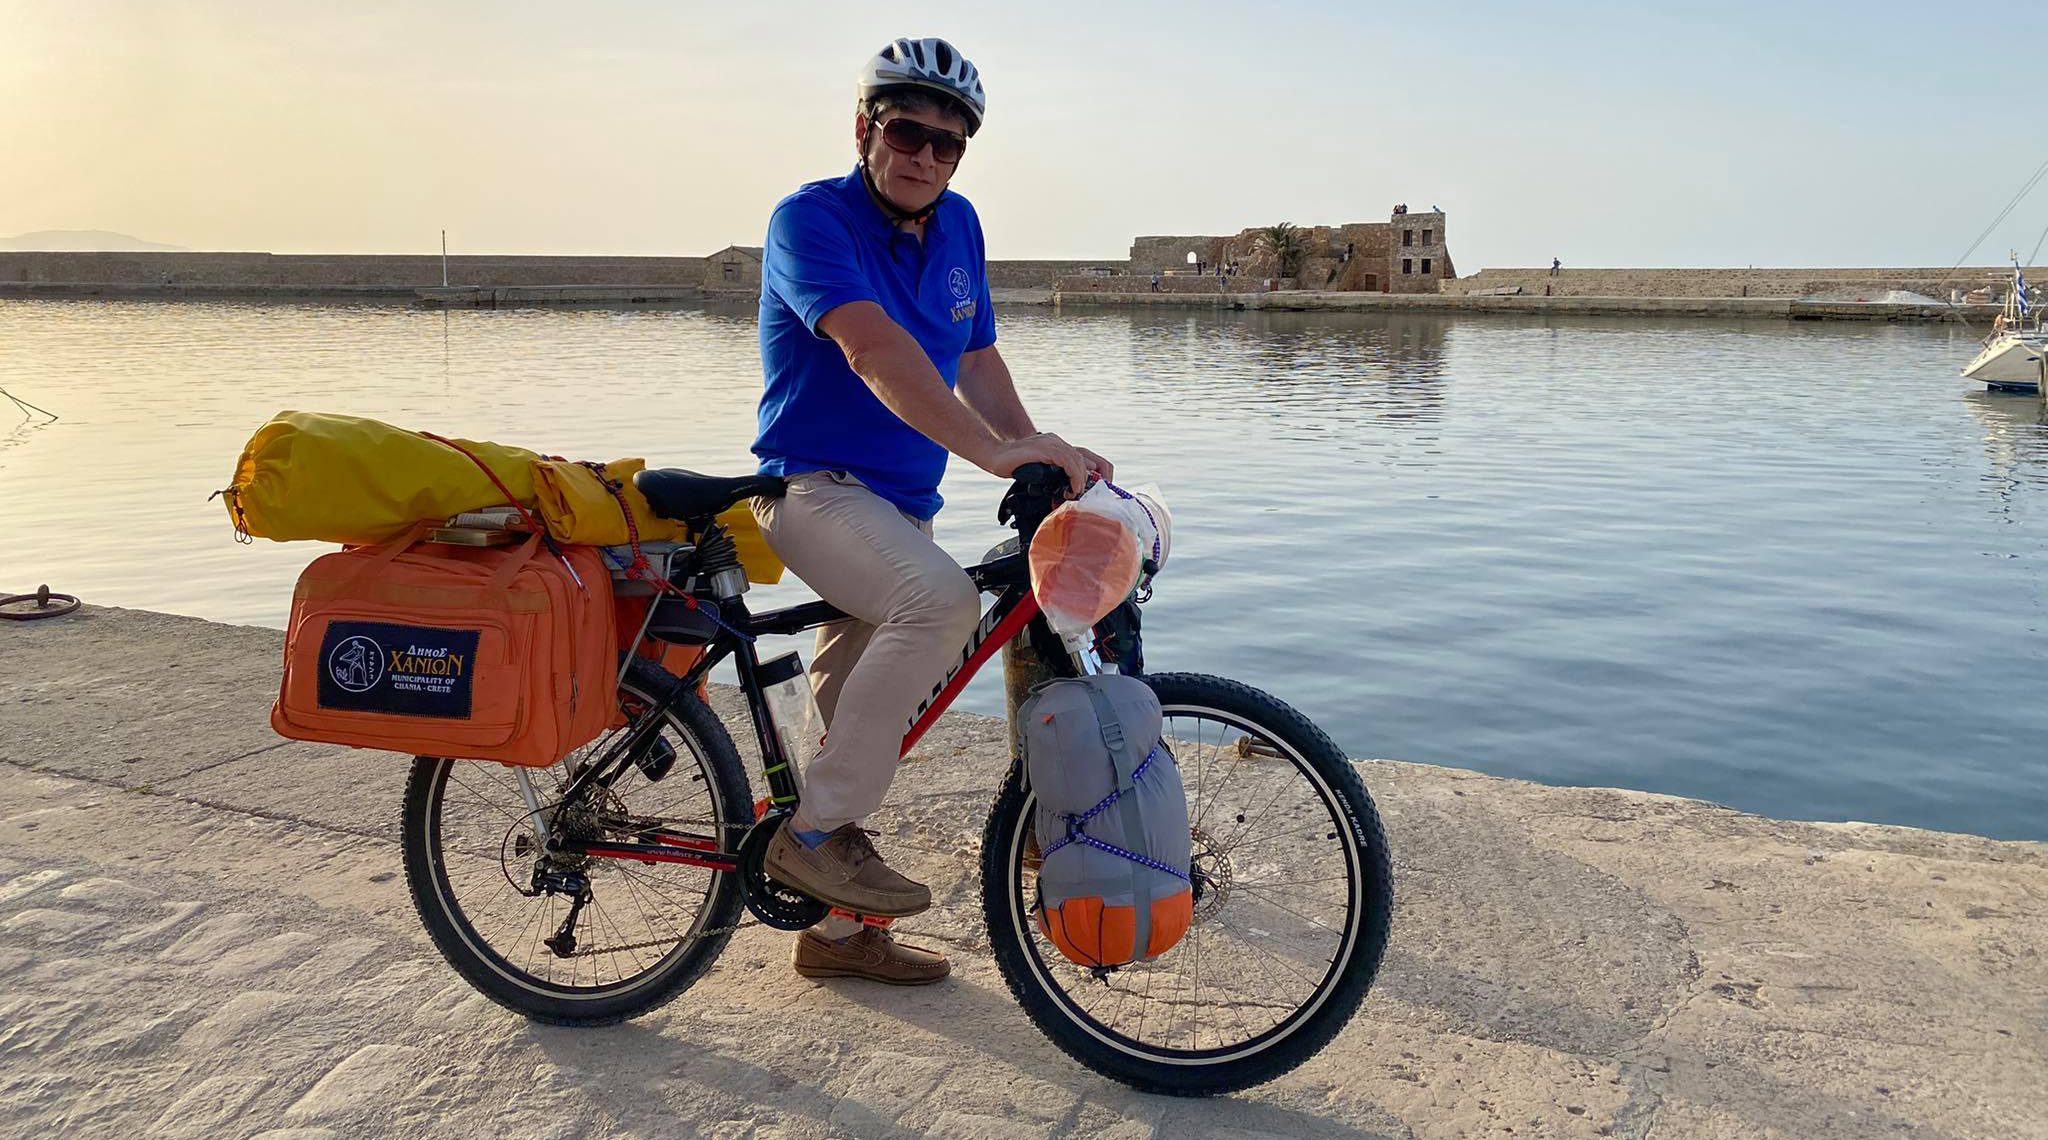 Ποδηλατικό ταξίδι 7.000 χλμ. περνά από την Αργολίδα πριν καταλήξει στα Χανιά